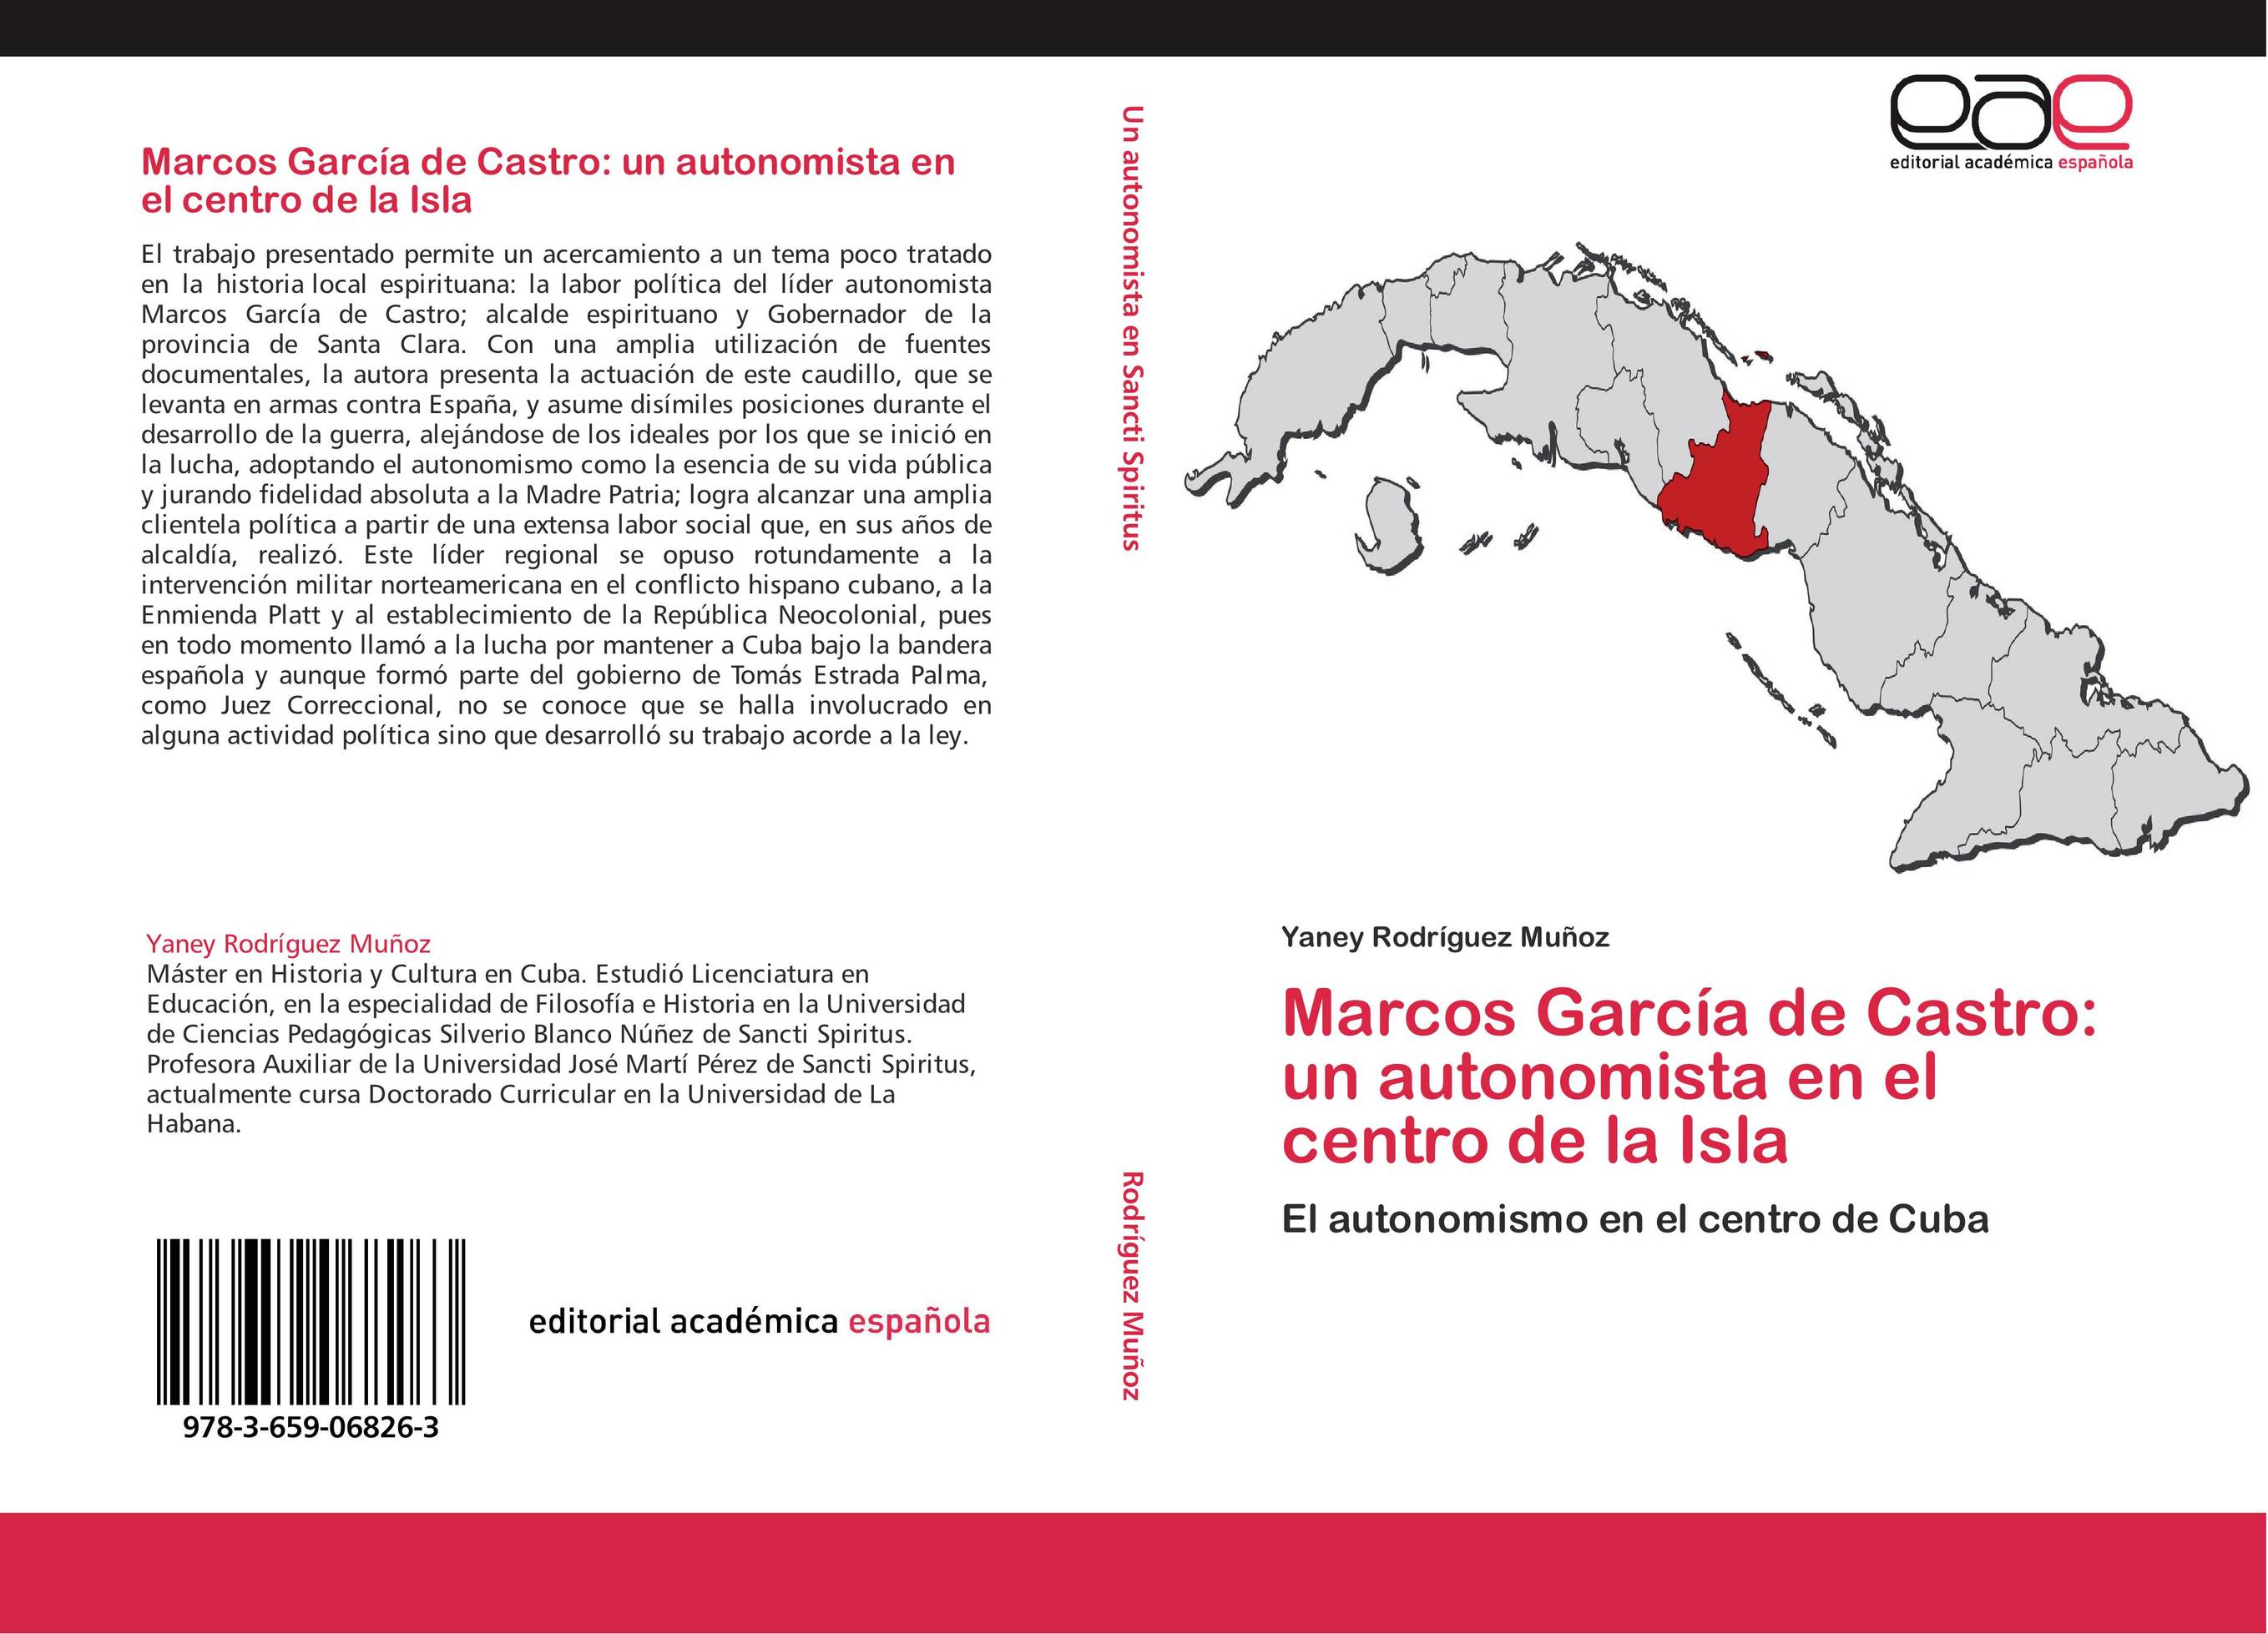 Marcos García de Castro: un autonomista en el centro de la Isla